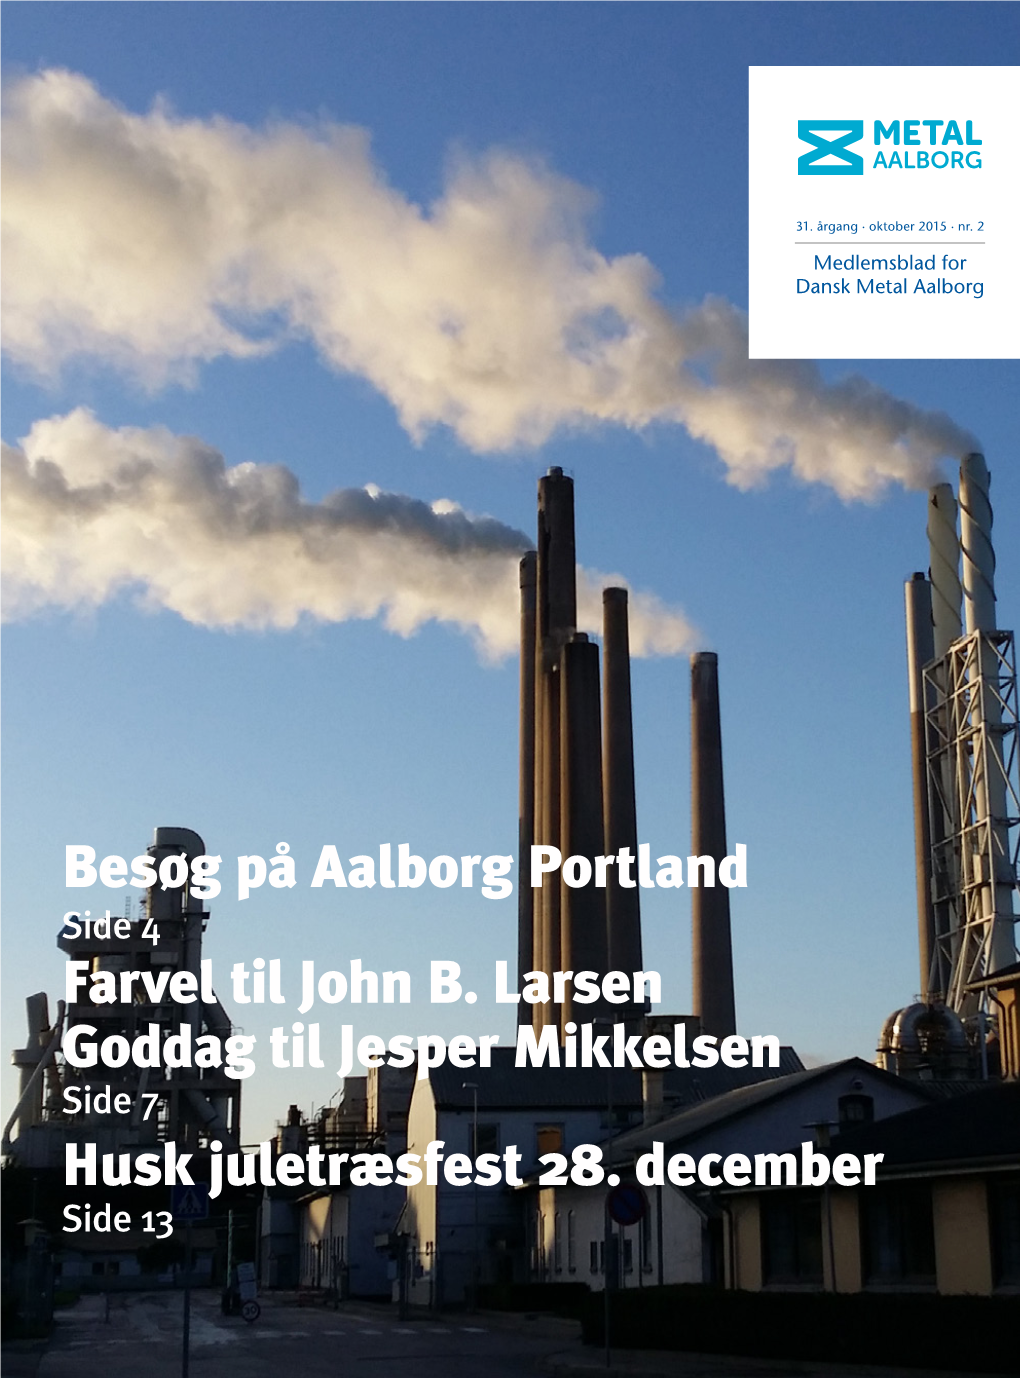 Besøg På Aalborg Portland Farvel Til John B. Larsen Goddag Til Jesper